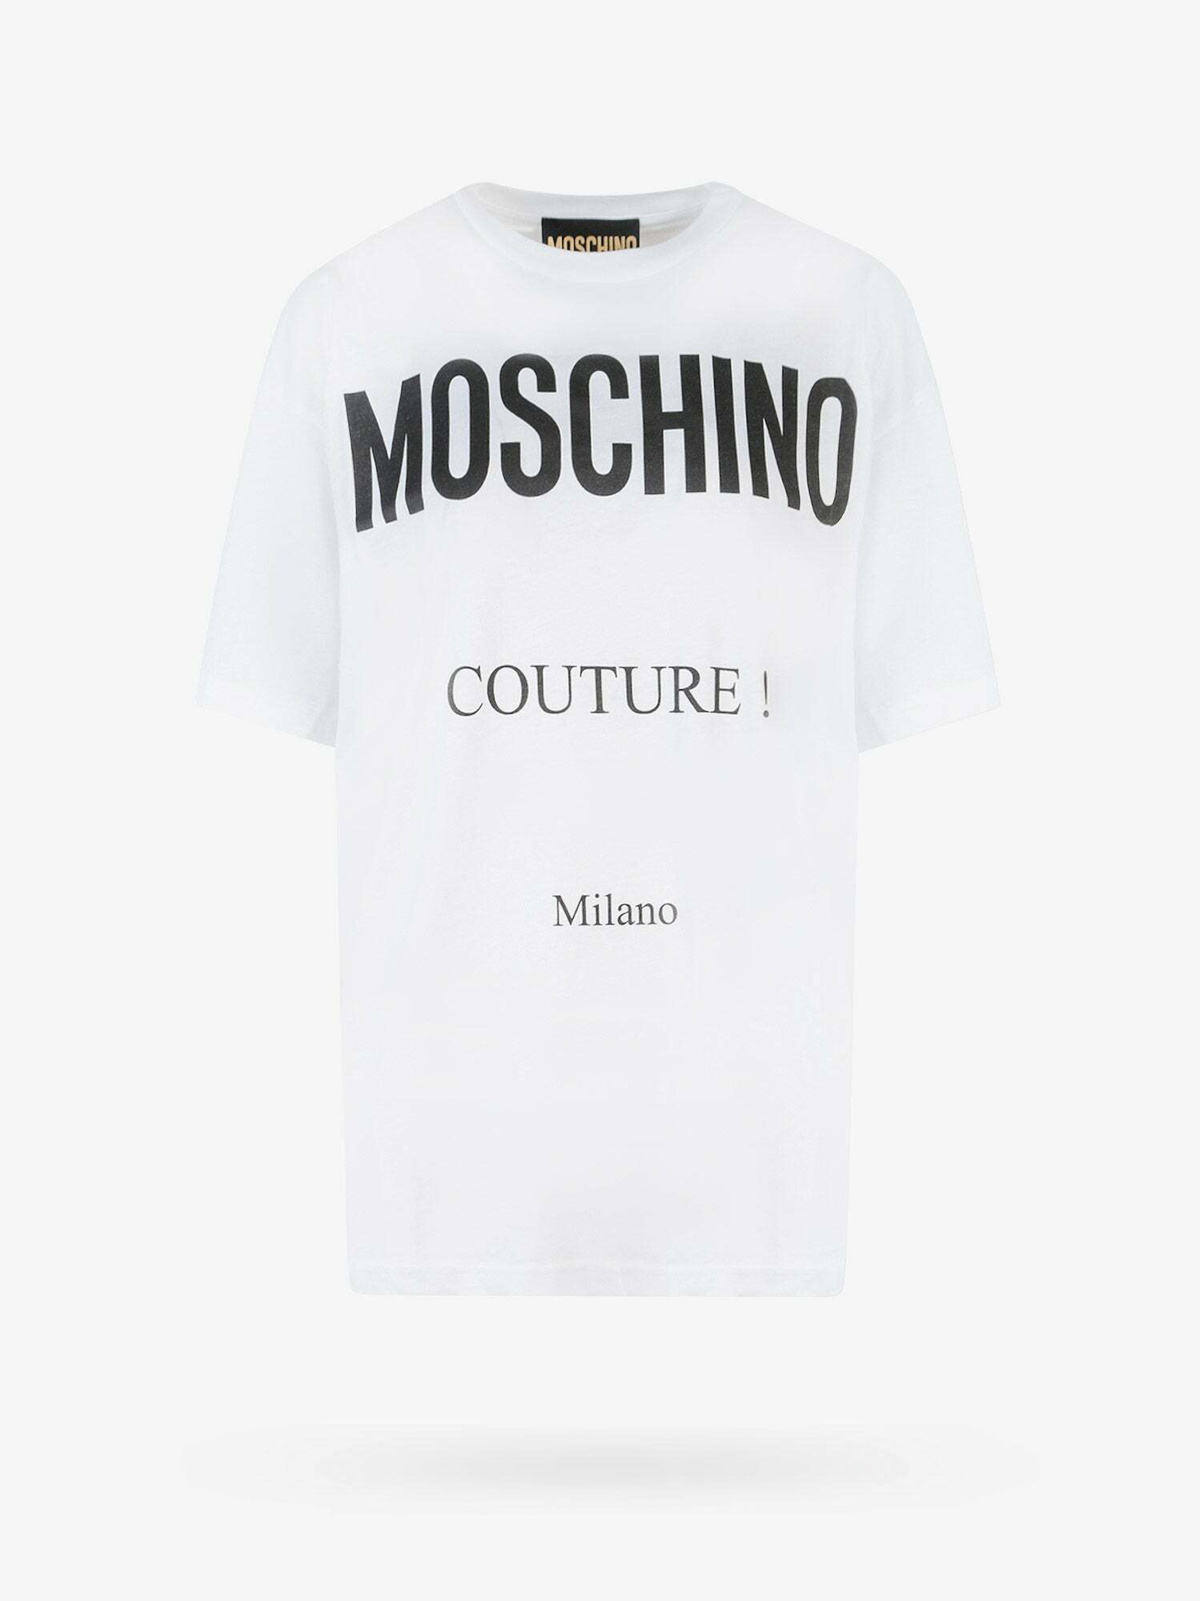 Moschino T Shirt White Womens Moschino